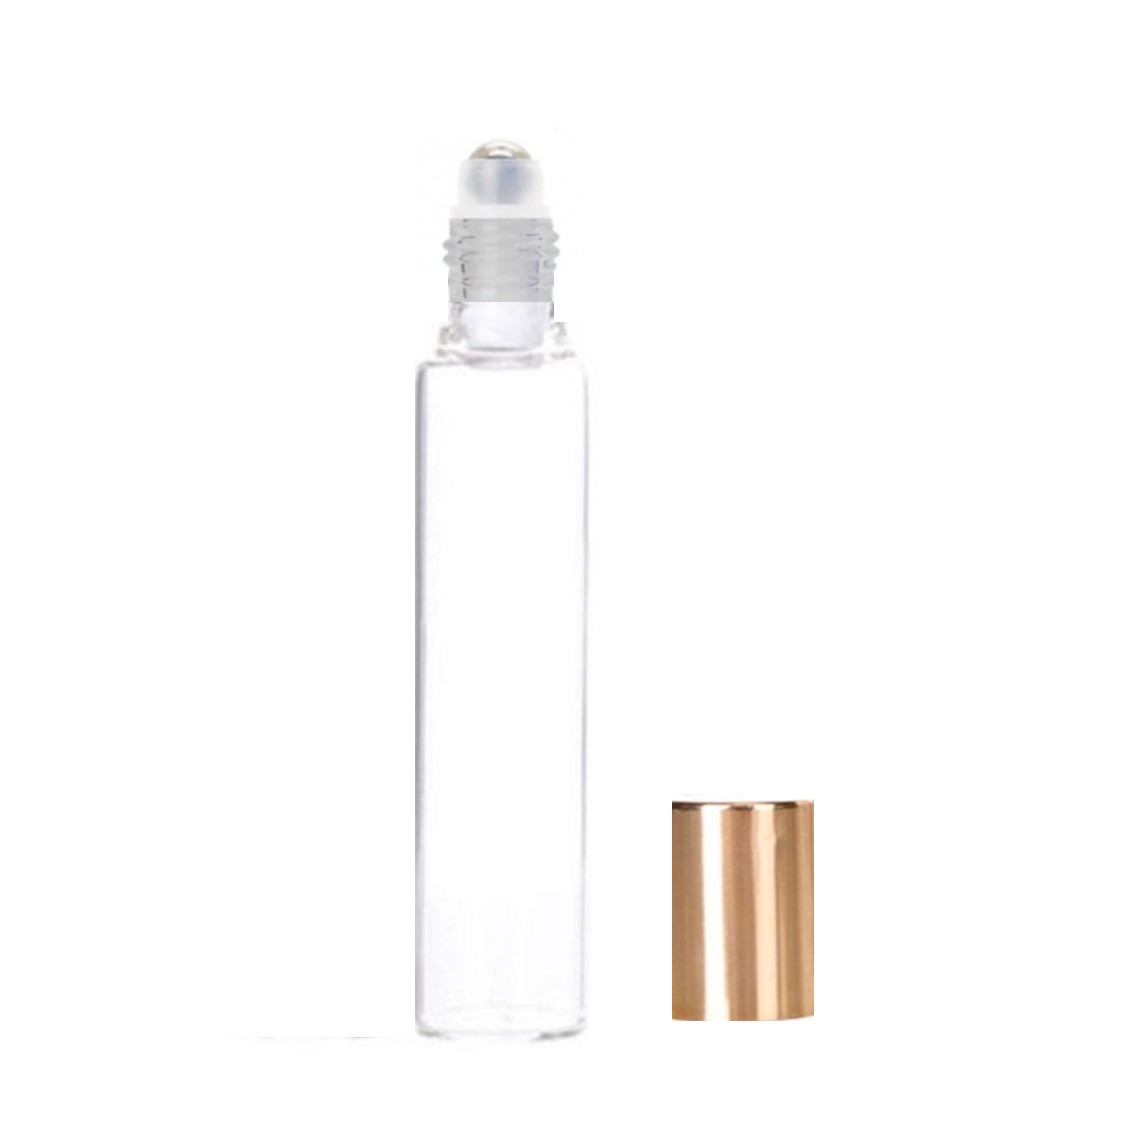 手作りアロマ トレンド 香水の詰め替えに便利なロールオンボトルです ロールオンボトル 10ml 贈答品 透明 金キャップ 香水 手作りコスメ 詰め替え 容器 アロマ